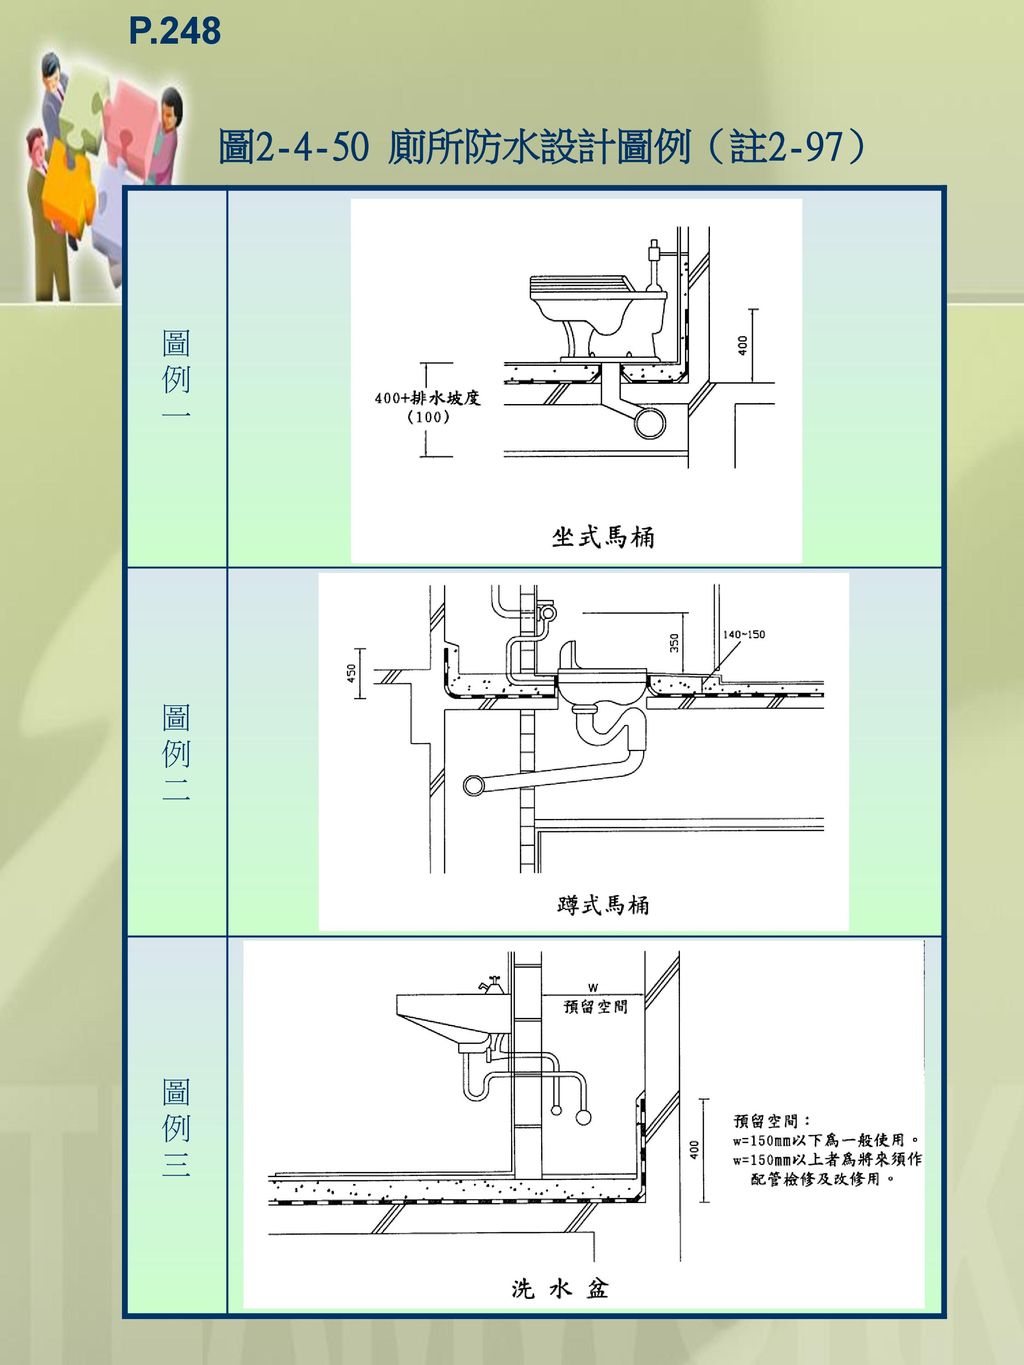 P.248 圖 廁所防水設計圖例（註2-97） 圖 例 一 二 三